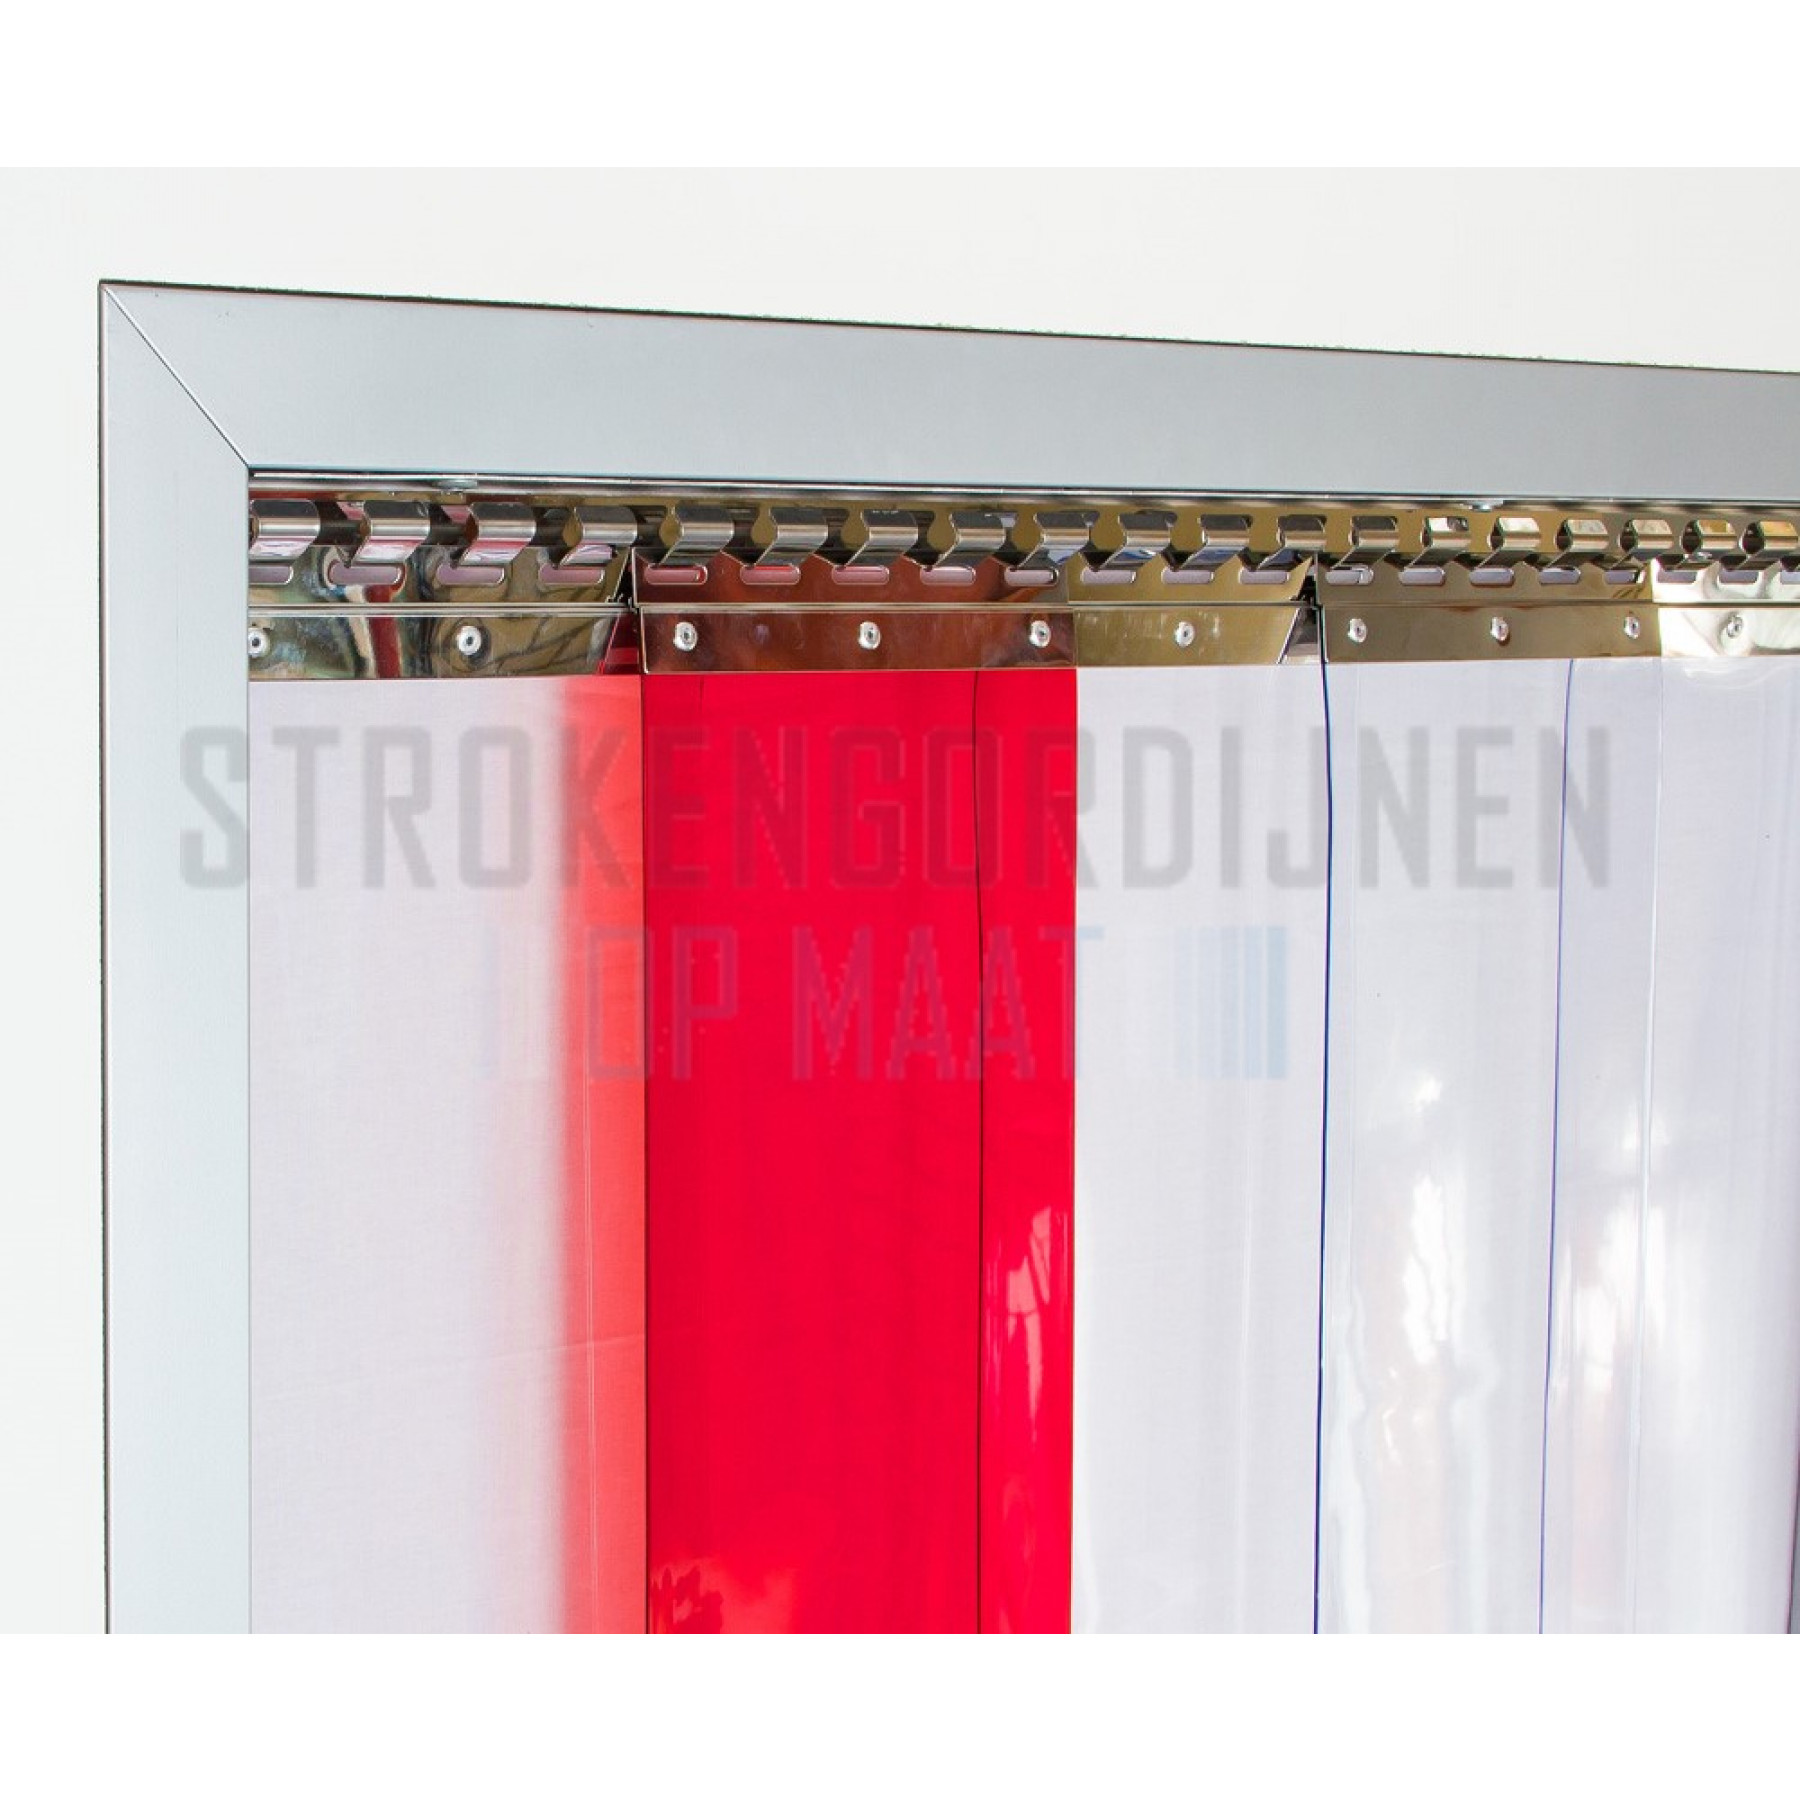 PVC Streifen zur Renovierung, 300mm breit, 3mm dick, Farbe Rot, transparent